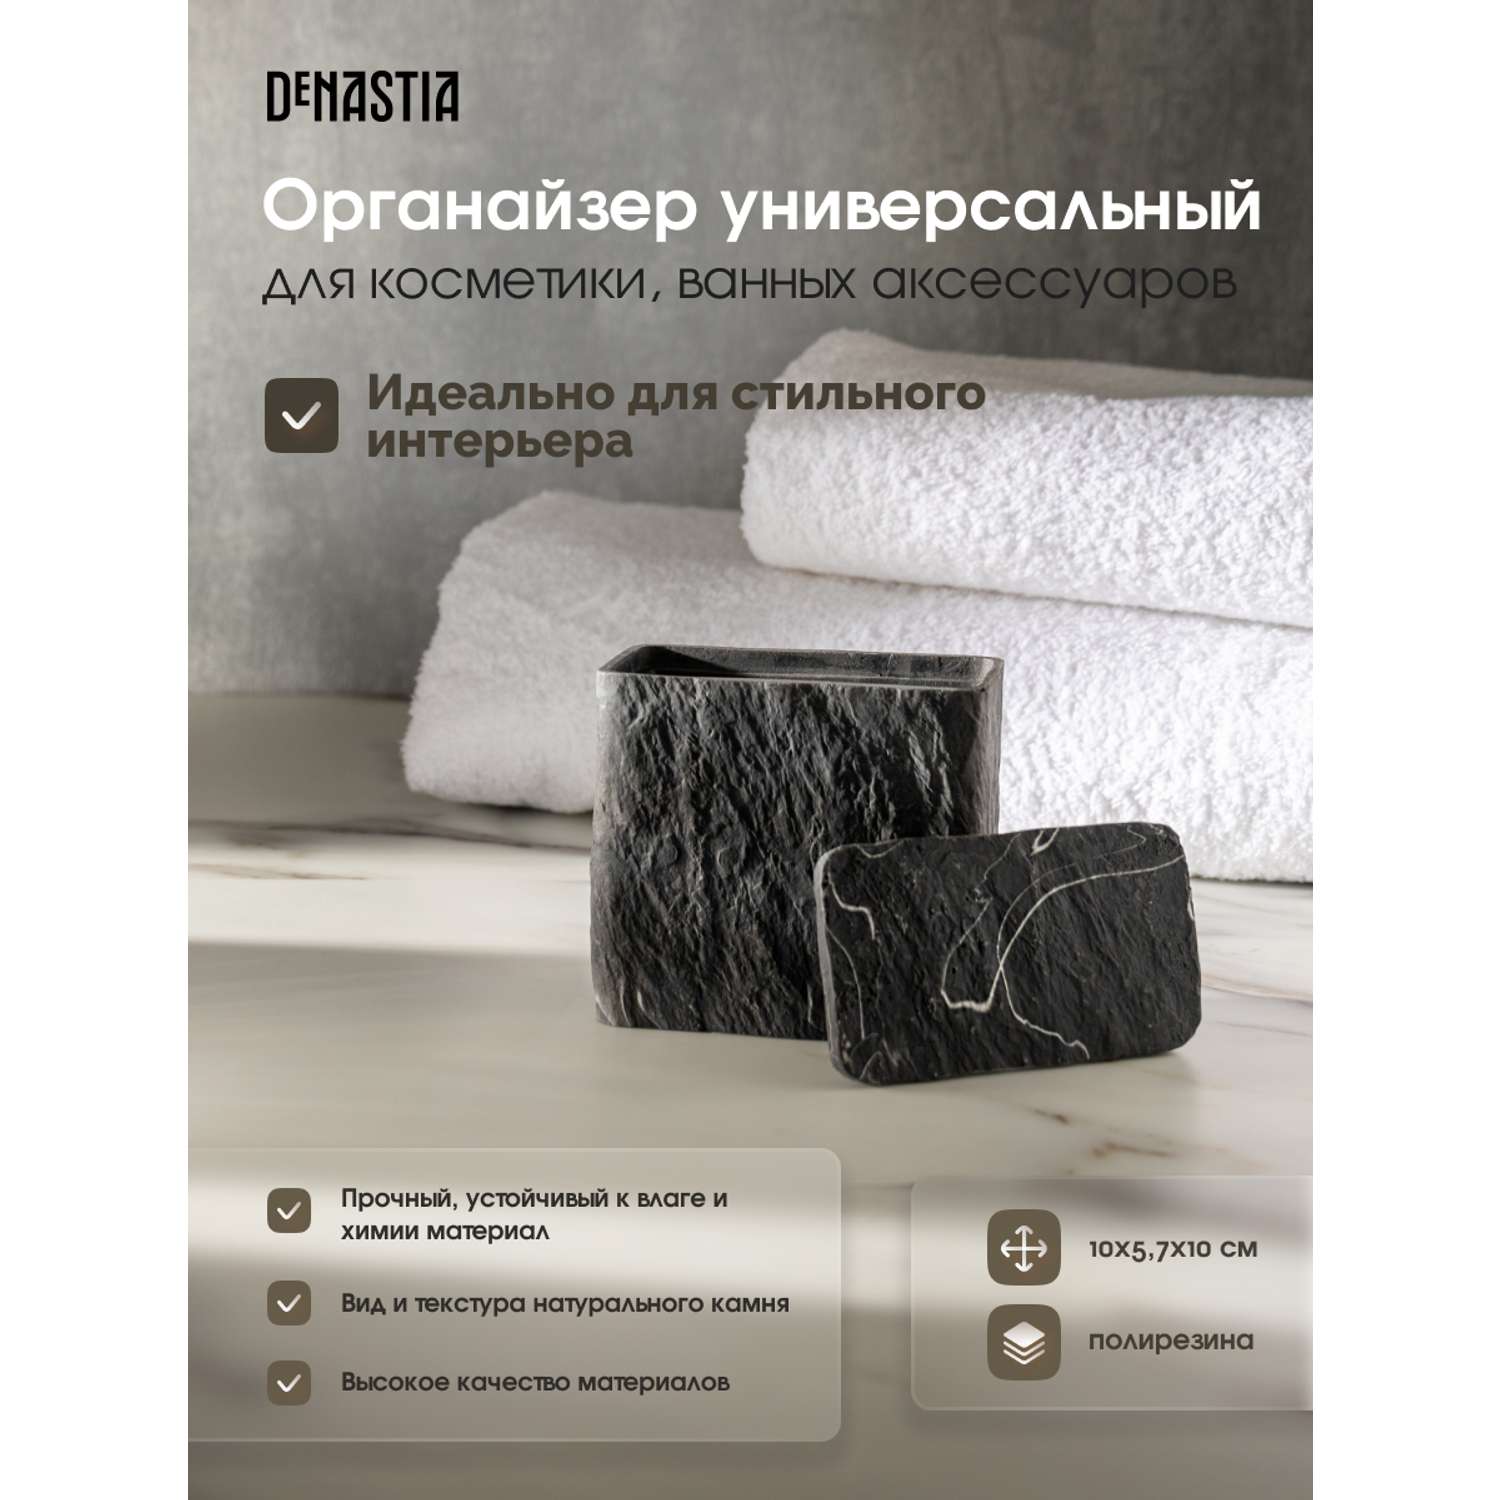 Органайзер универсальный DeNASTIA для косметики ванных аксессуаров полирезина 245 мл темно-серый X000188 - фото 2